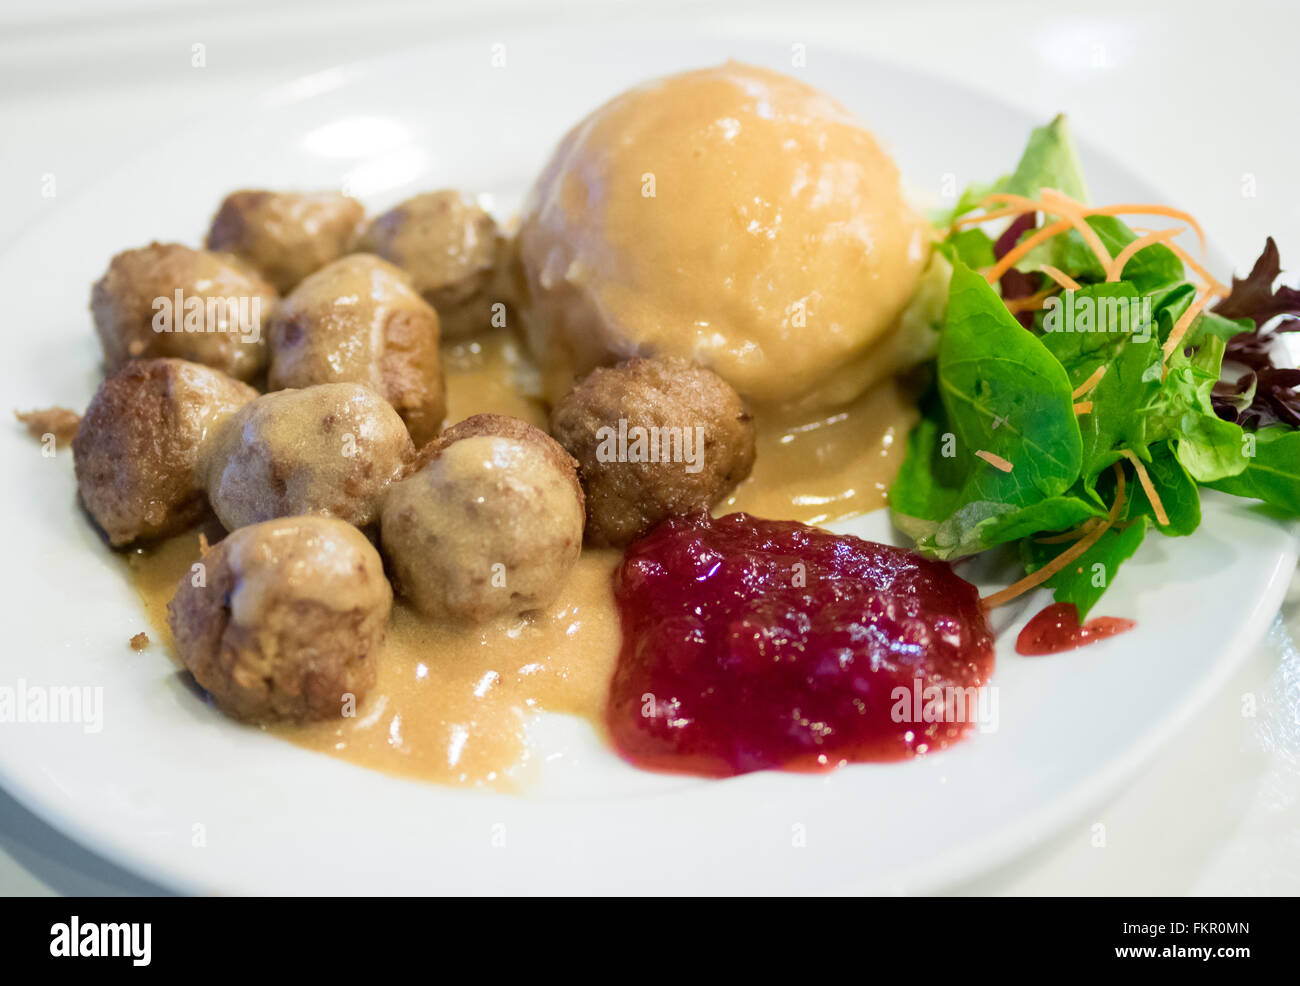 Eine Platte von IKEA Frikadellen, Kartoffelpüree, Sahne Soße, grüner Salat und Preiselbeer-Sauce. Stockfoto